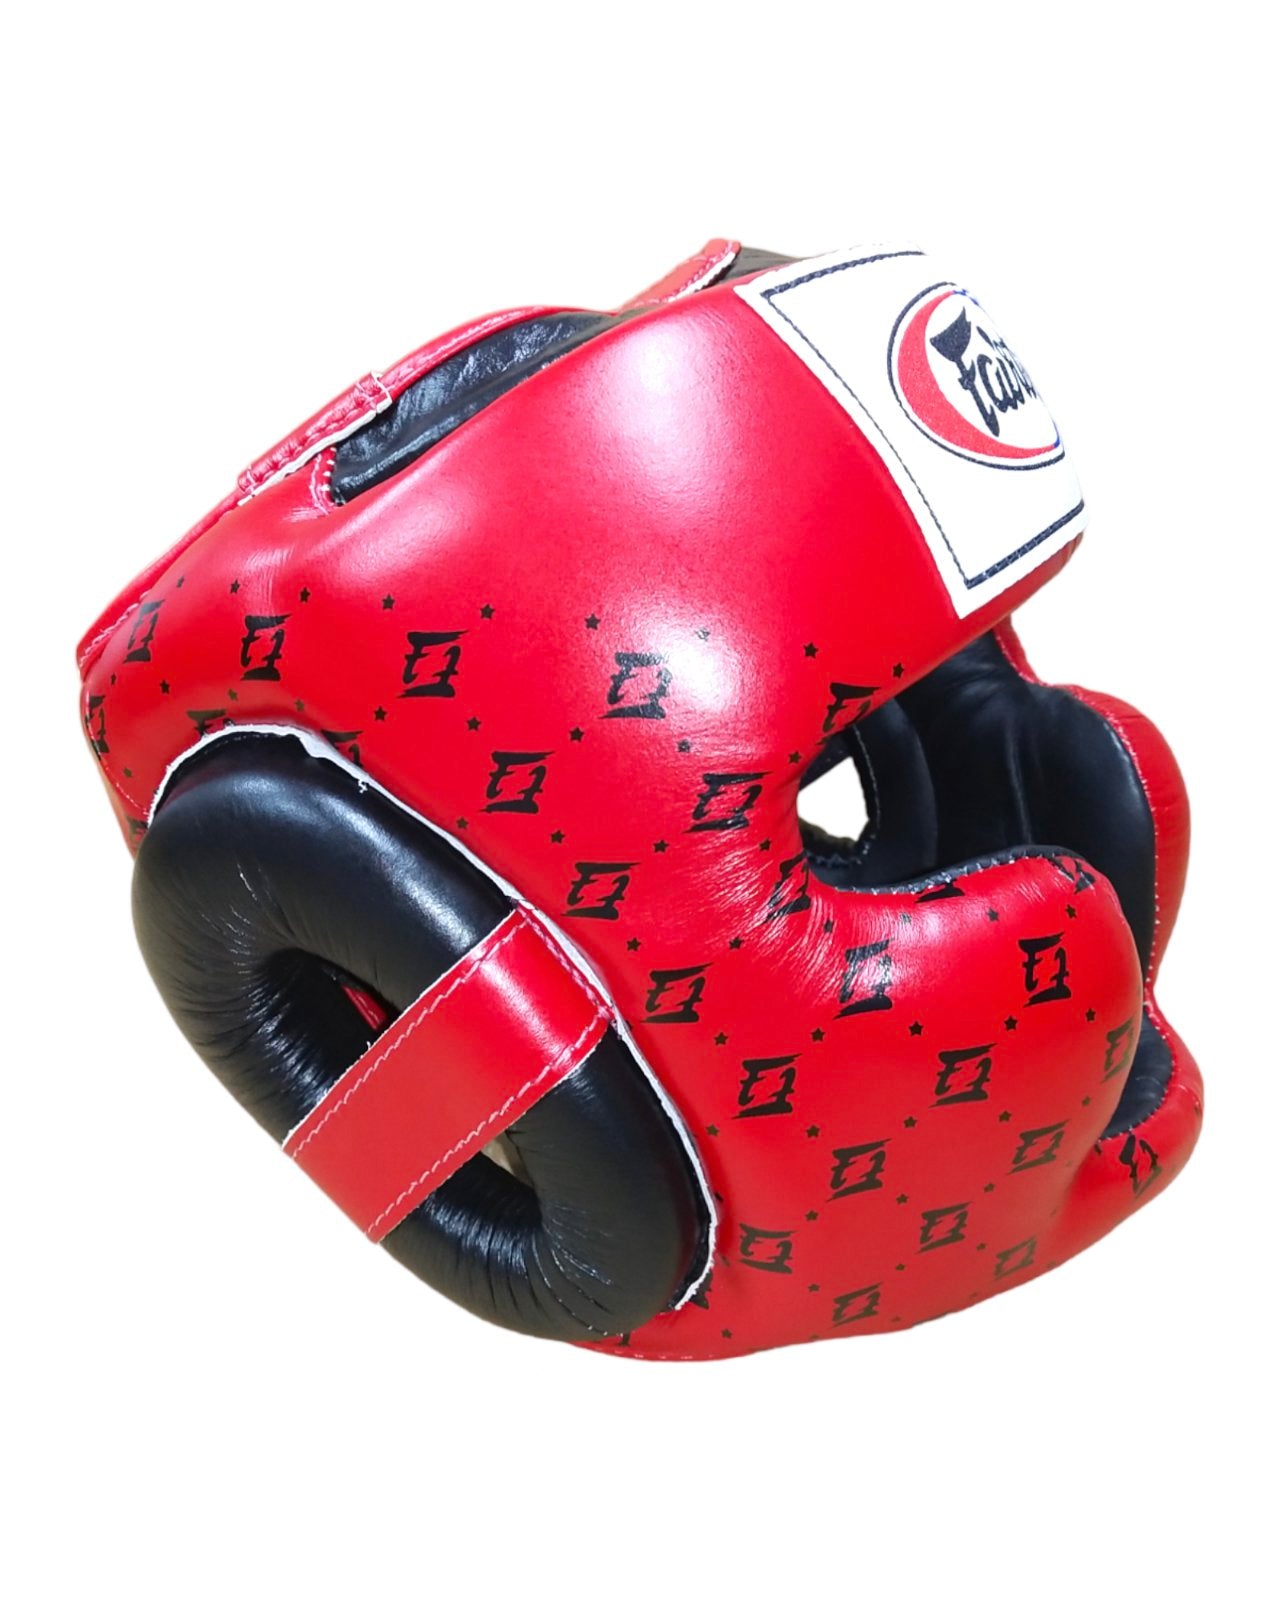 FAIRTEX HG10 Full Coverage Headgear Red/Black